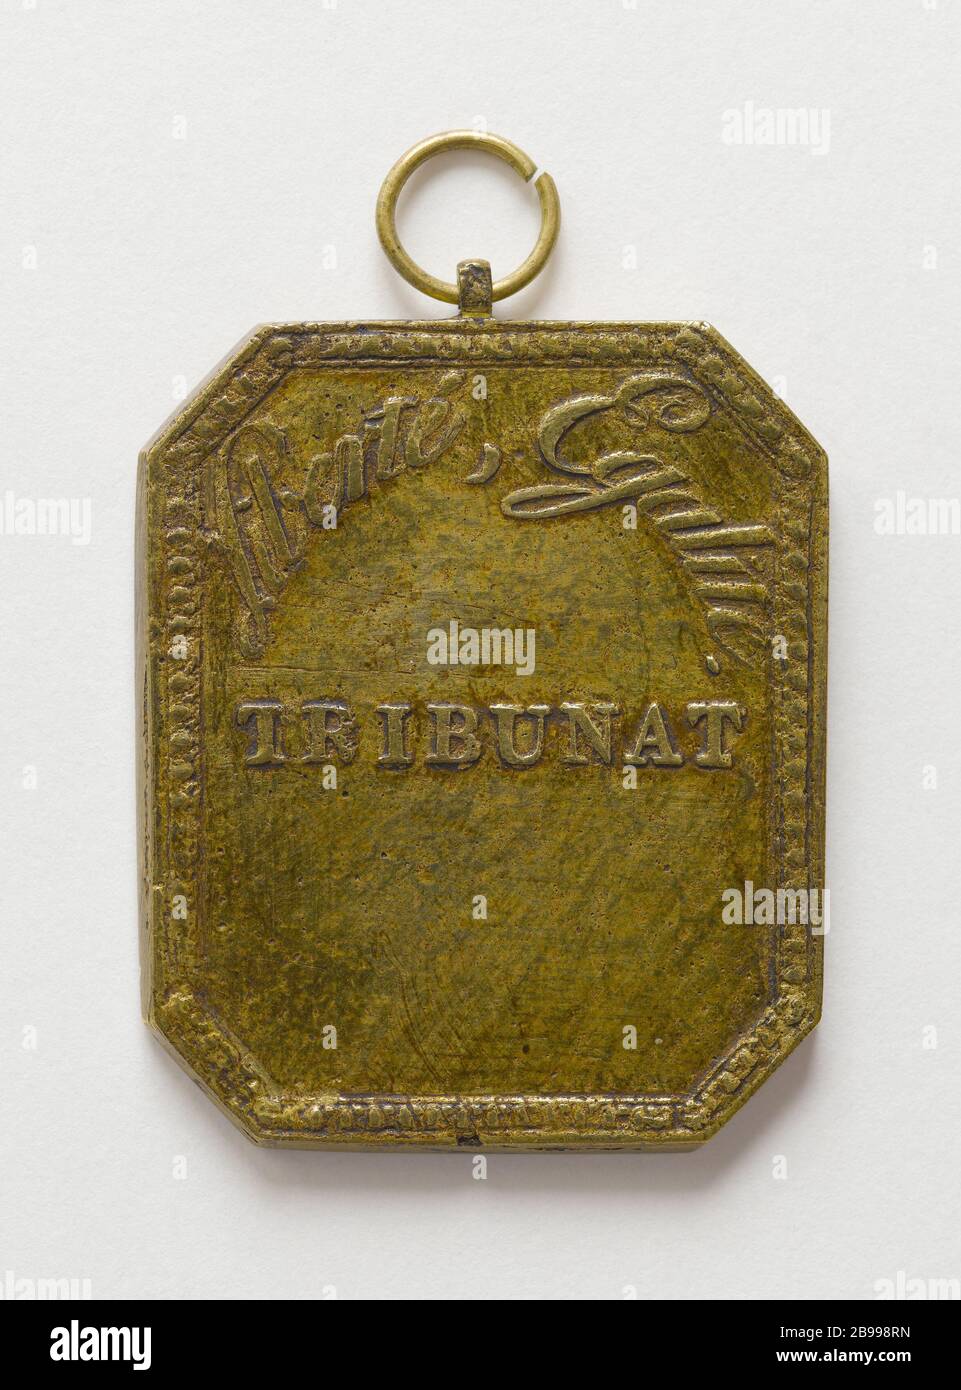 MEDAGLIA di SERVIZIO TRIBUNALE MEMBRO, VIII (1800) Nicolas-Marie Gatteaux (1751-1832). Médaille de fondtion de membre du Tribunat, an VIII (1800). Bronzo doré. 1800. Parigi, musée Carnavalet. Foto Stock